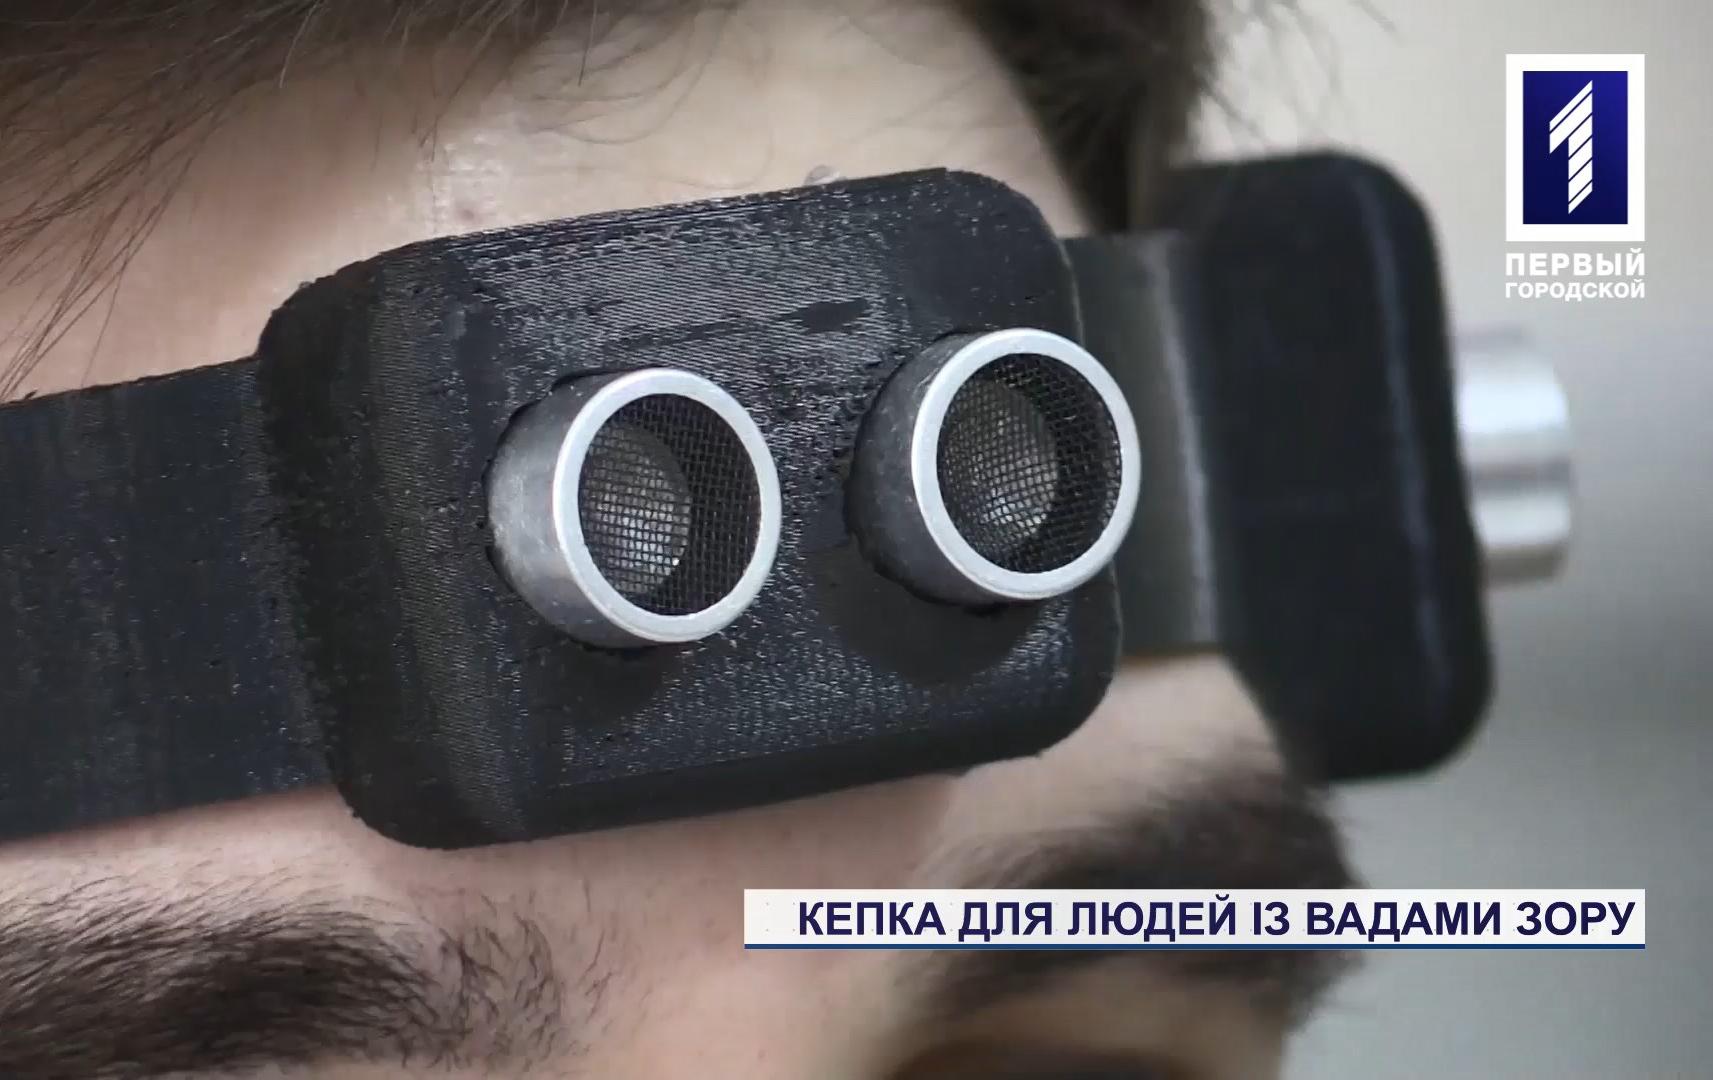 В університеті Кривого Рогу розробили корисний пристрій для людей із вадами зору